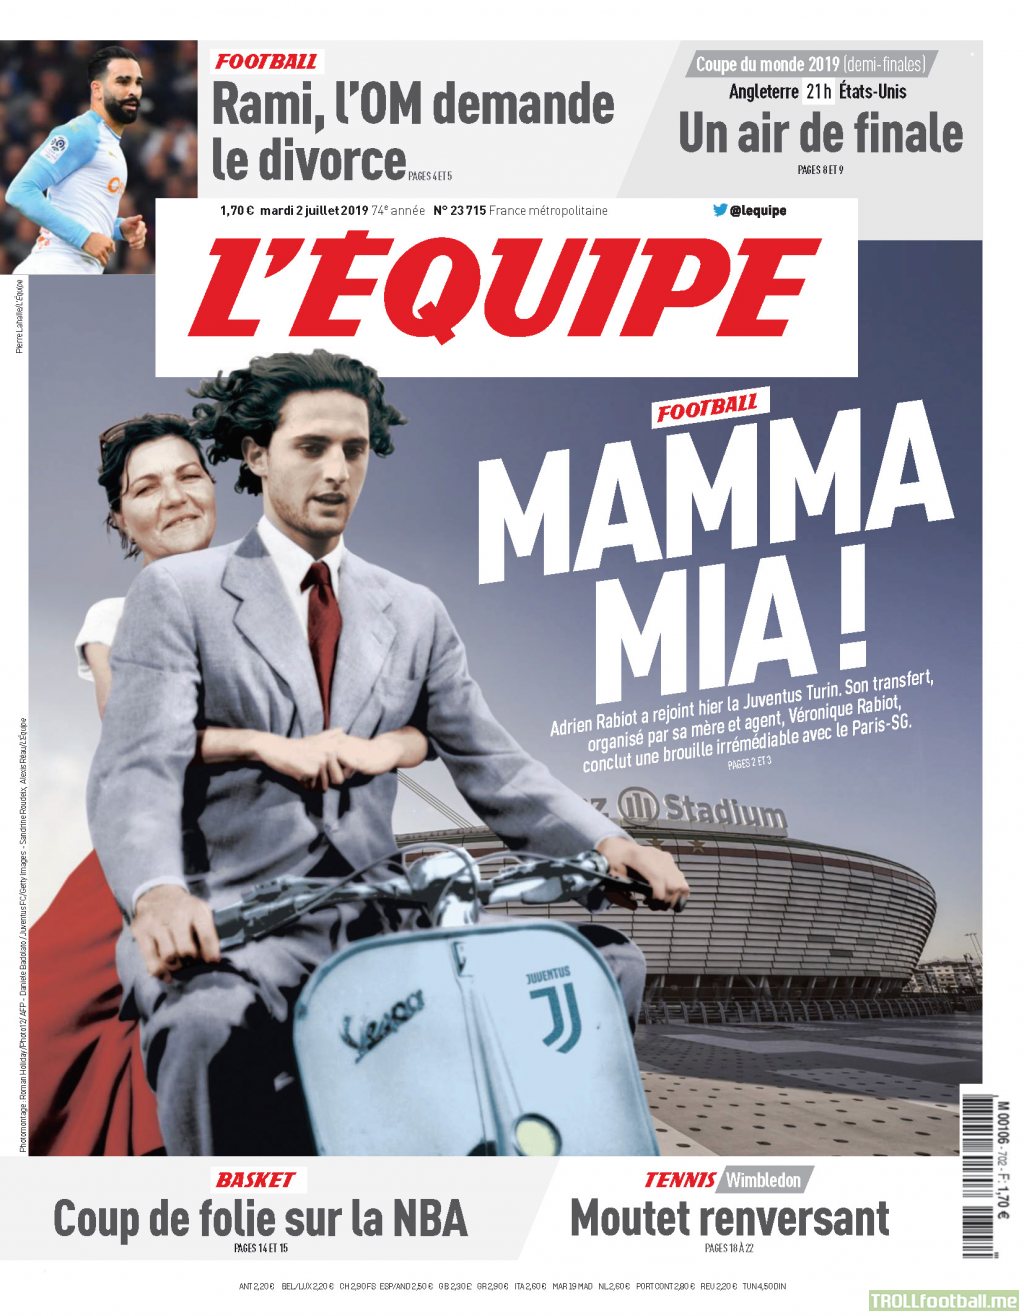 L'equipe frontpage today : "Mamma Mia"